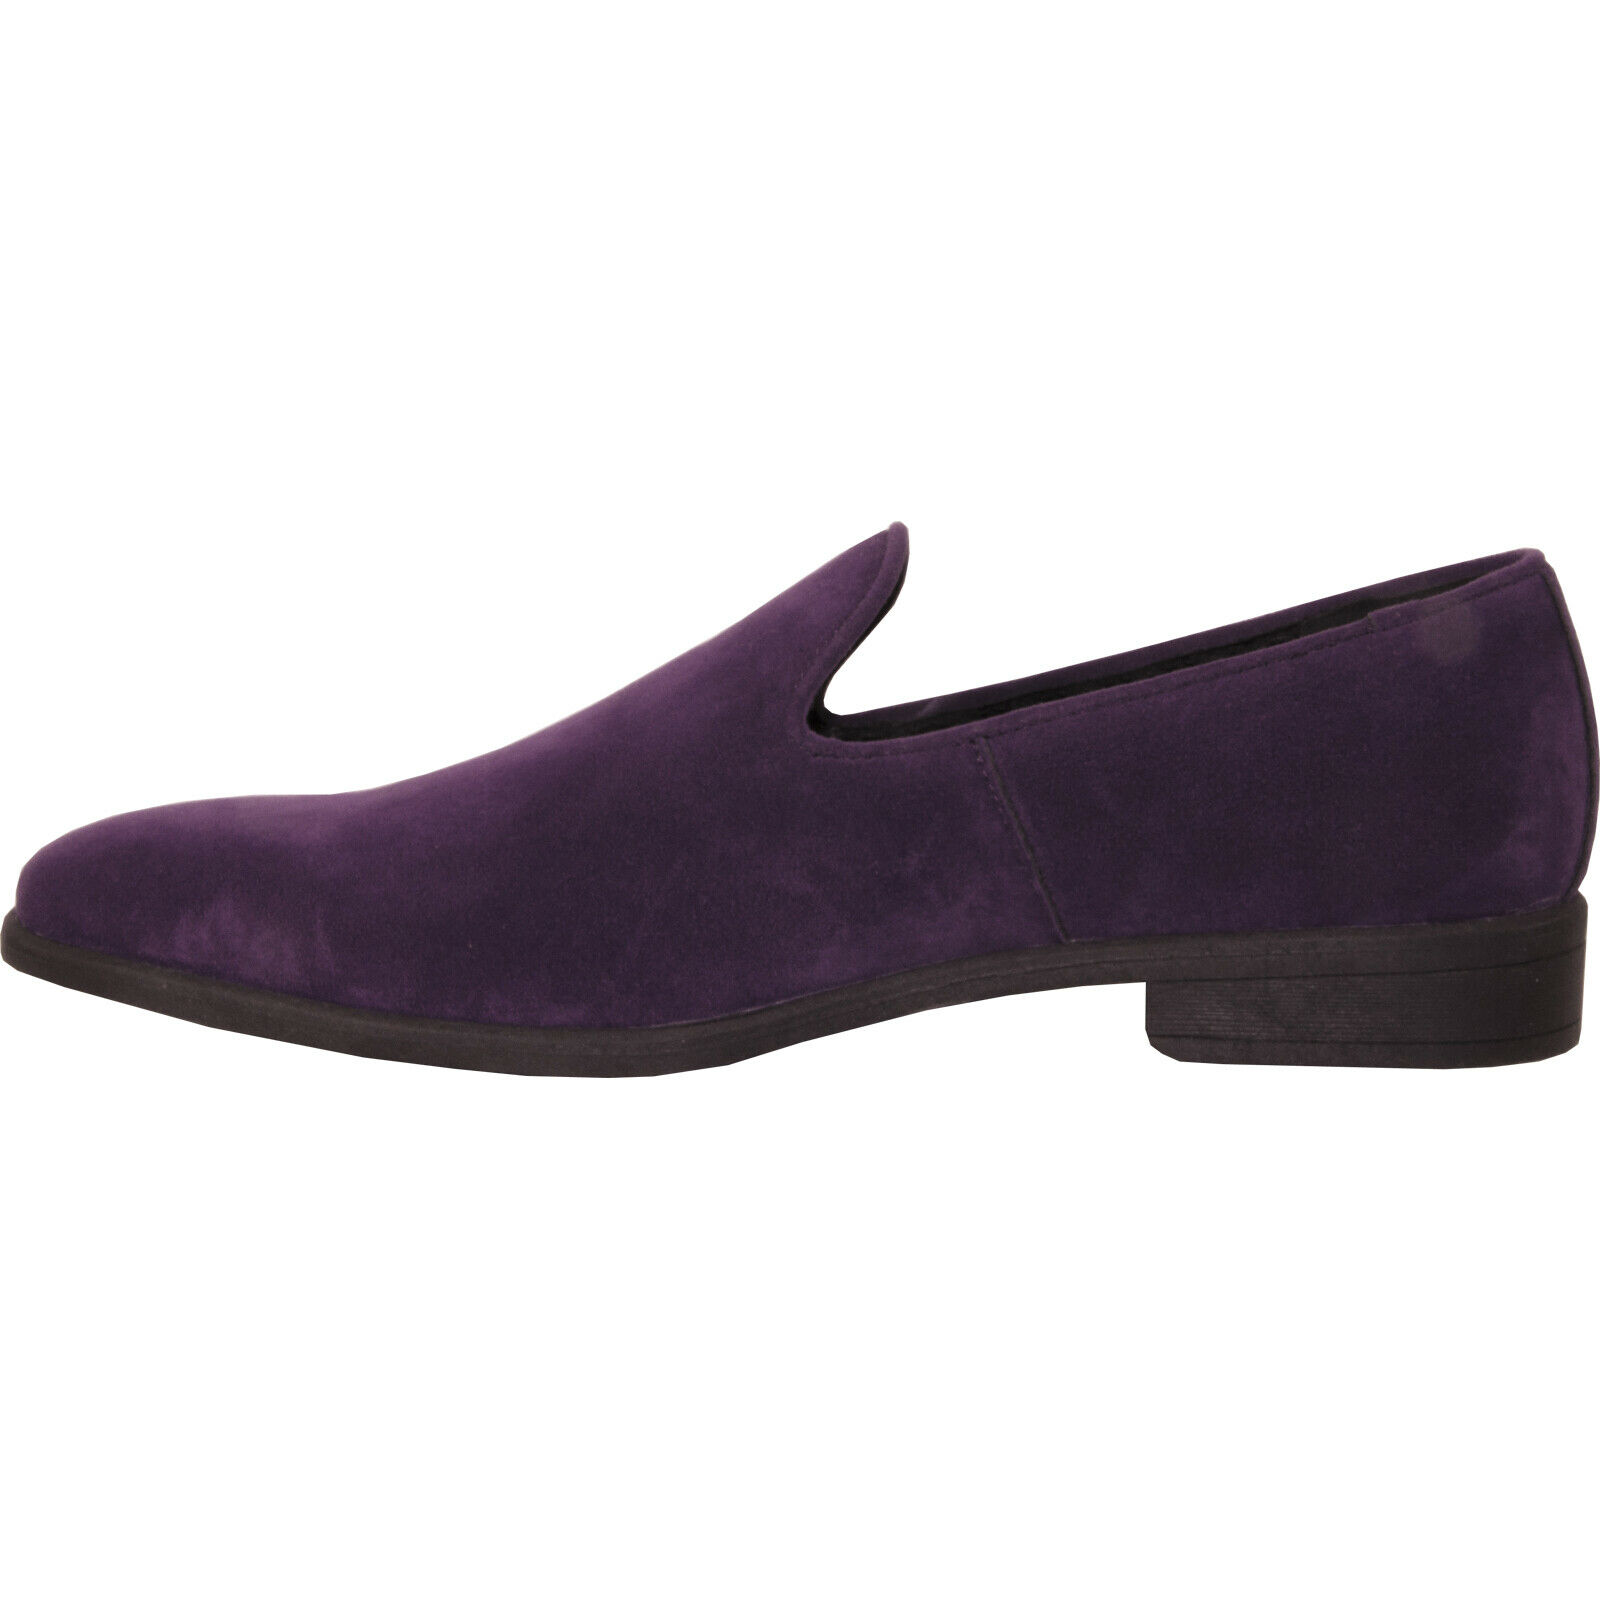 Vangelo Men Dress Shoe KING-5 Loafer Slip On Formal Tuxedo for Prom and Wedding Purple 10M - image 5 of 7